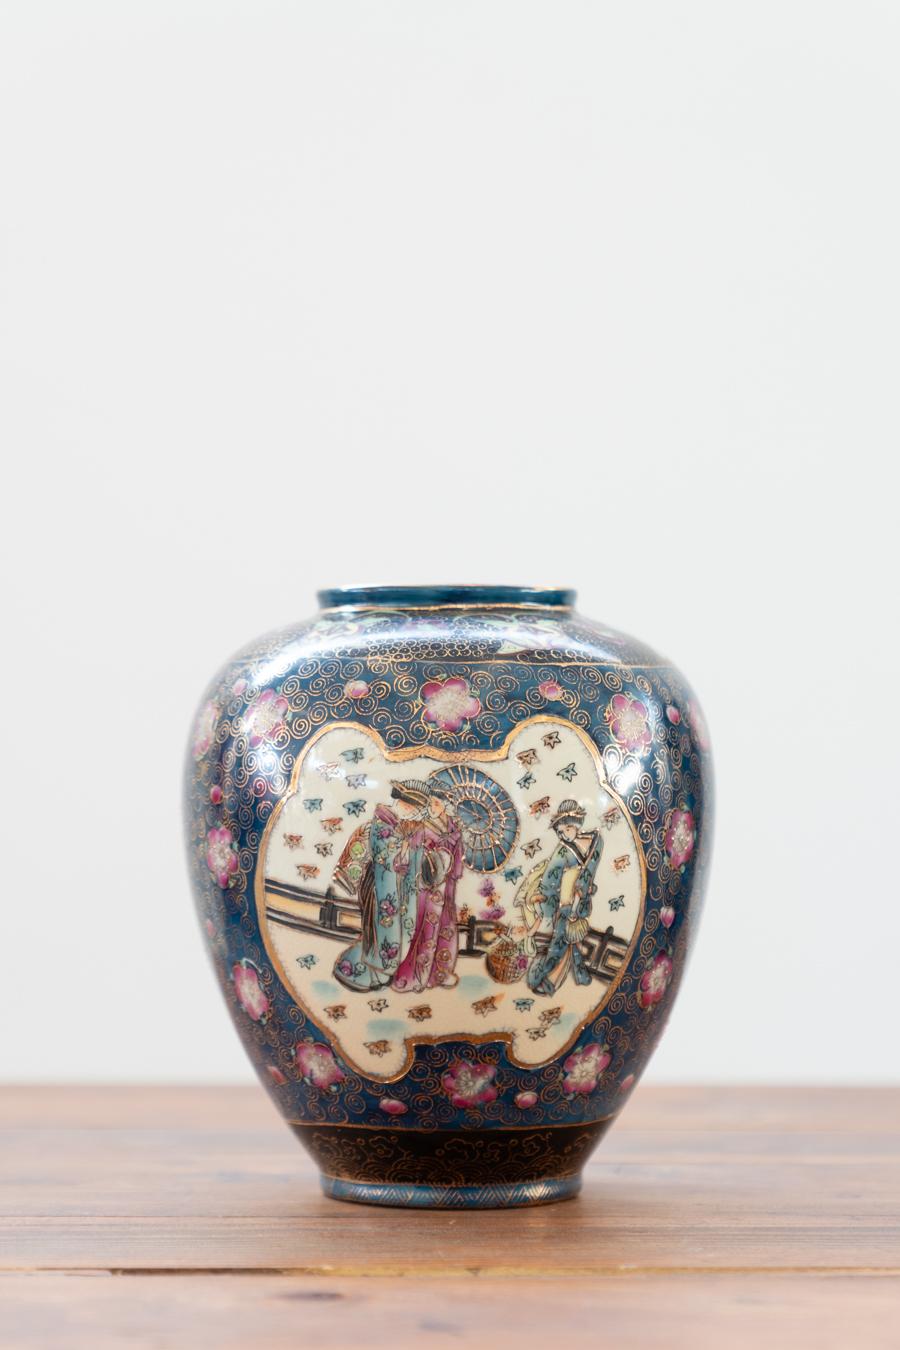 Japanese antique porcelain vases, Meiji period, oriental art in 				porcelain  19th century, set of 2						
DESCRIPTION	Small vase dimensions: H22 x D20 - Kg3
	Large vase dimensions: H30 x D20 - Kg5
	
PIECES	2	

DESIGN PERIOD	    